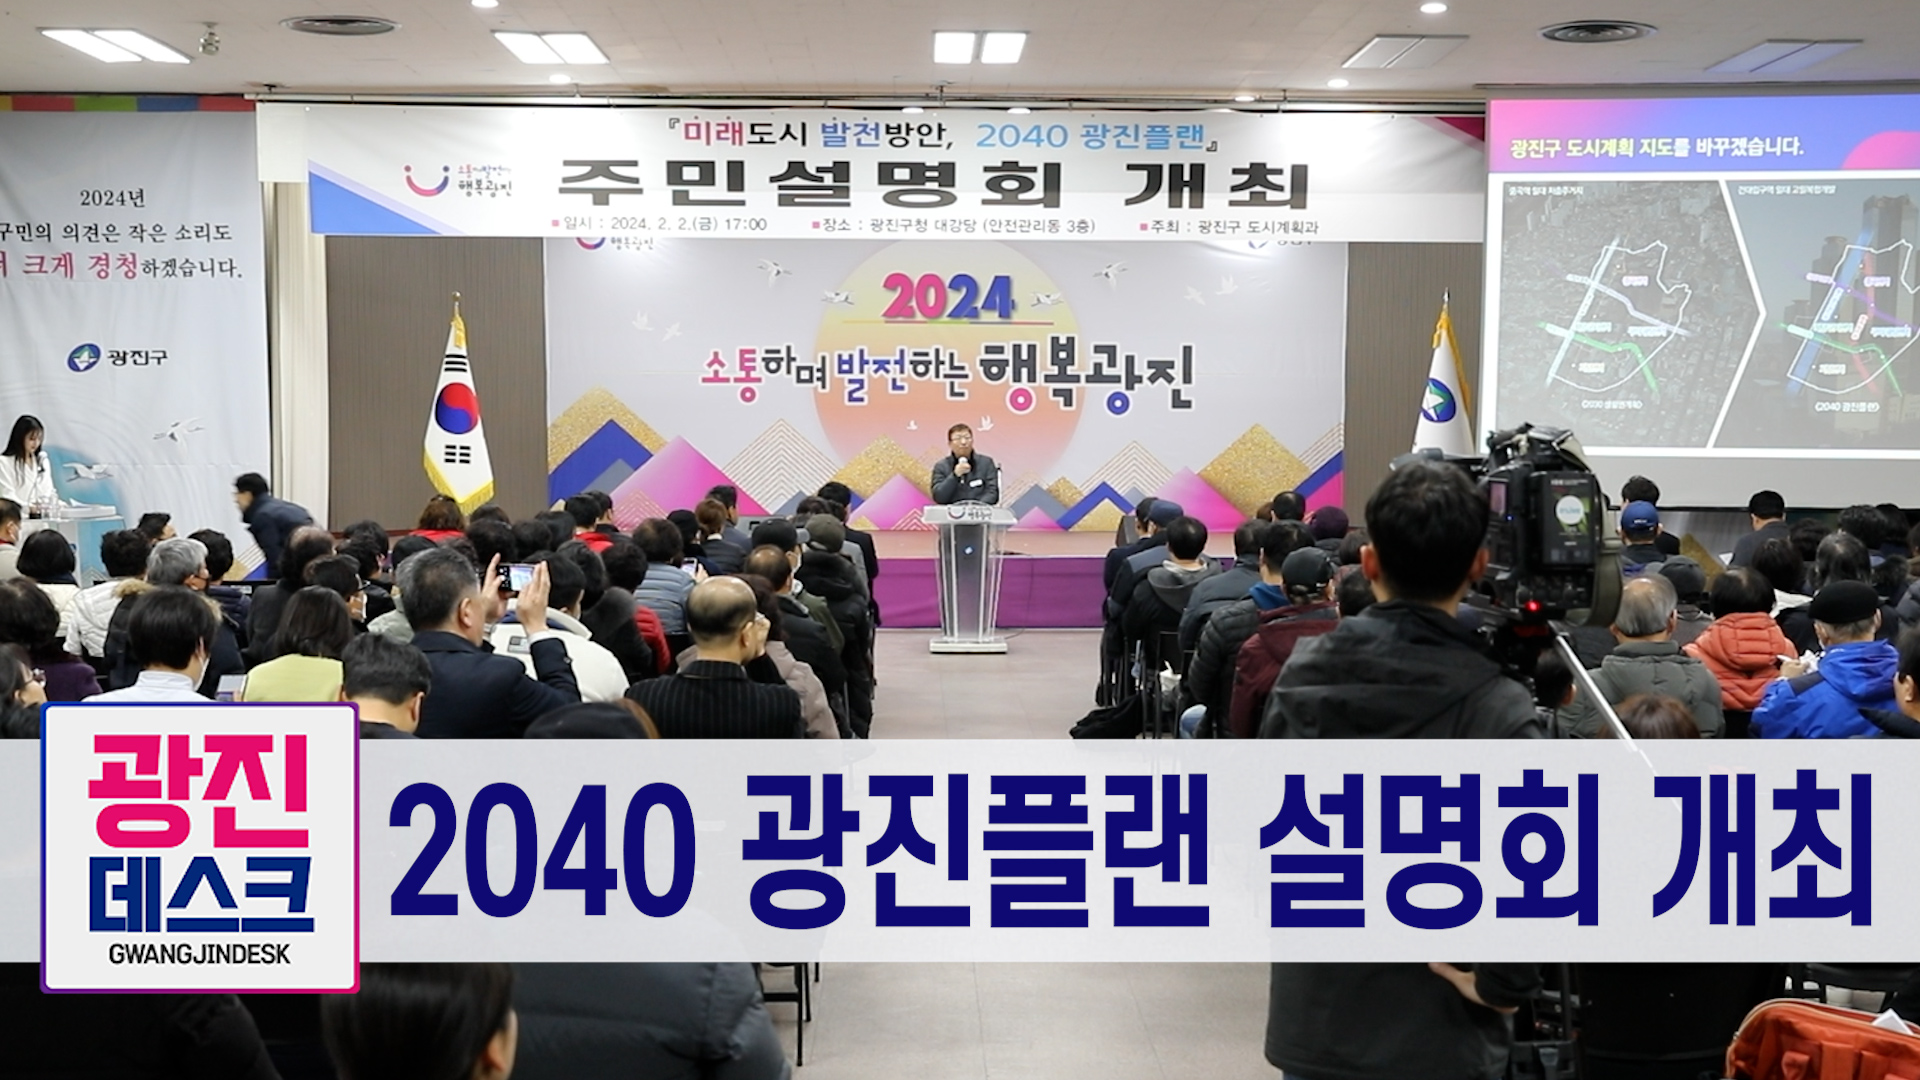 2040 광진플랜 설명회 개최